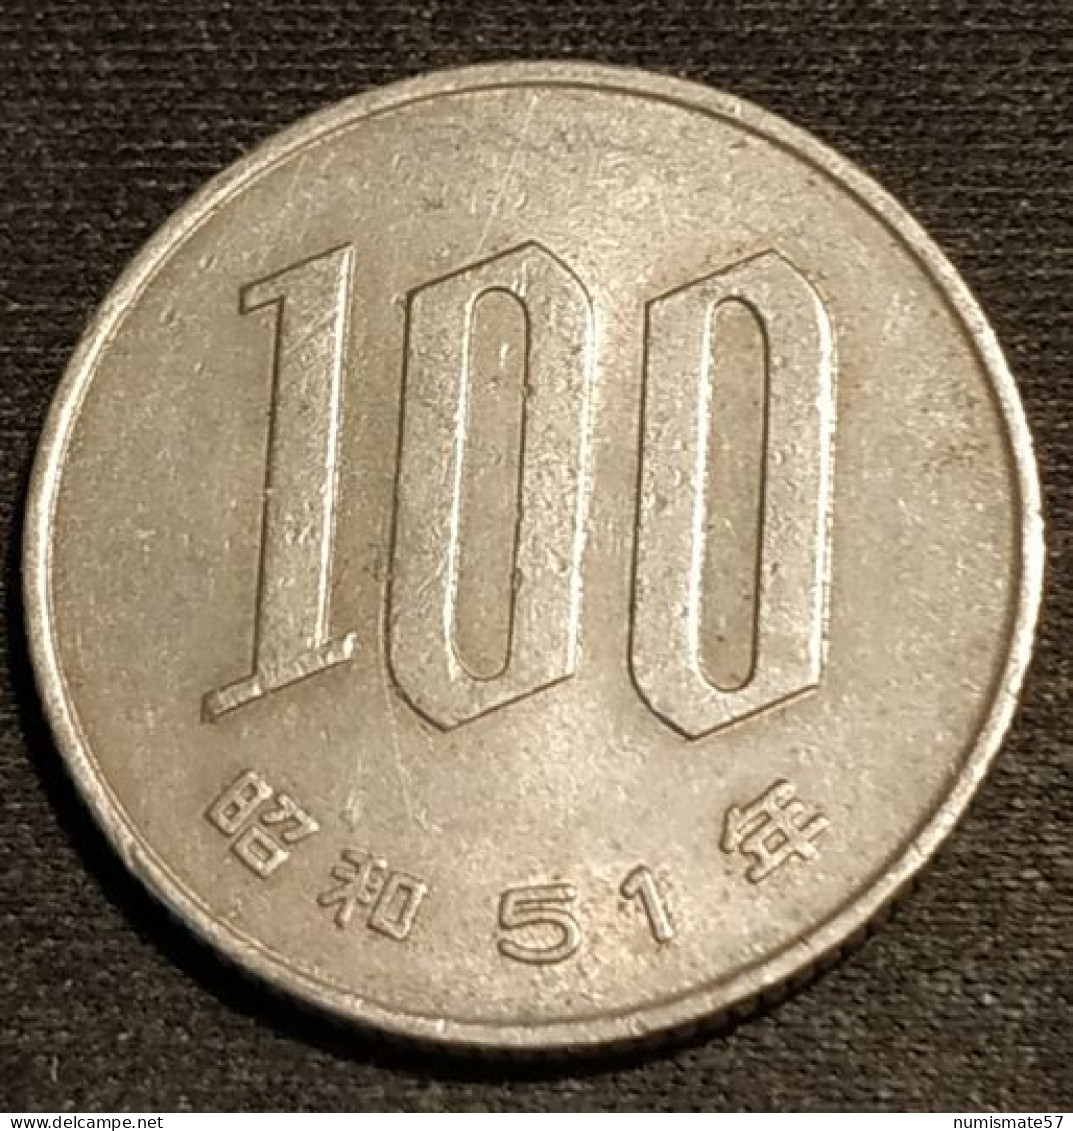 JAPON - JAPAN - 100 YEN 1976 - Shōwa - Year 51 - KM 82 - Japan